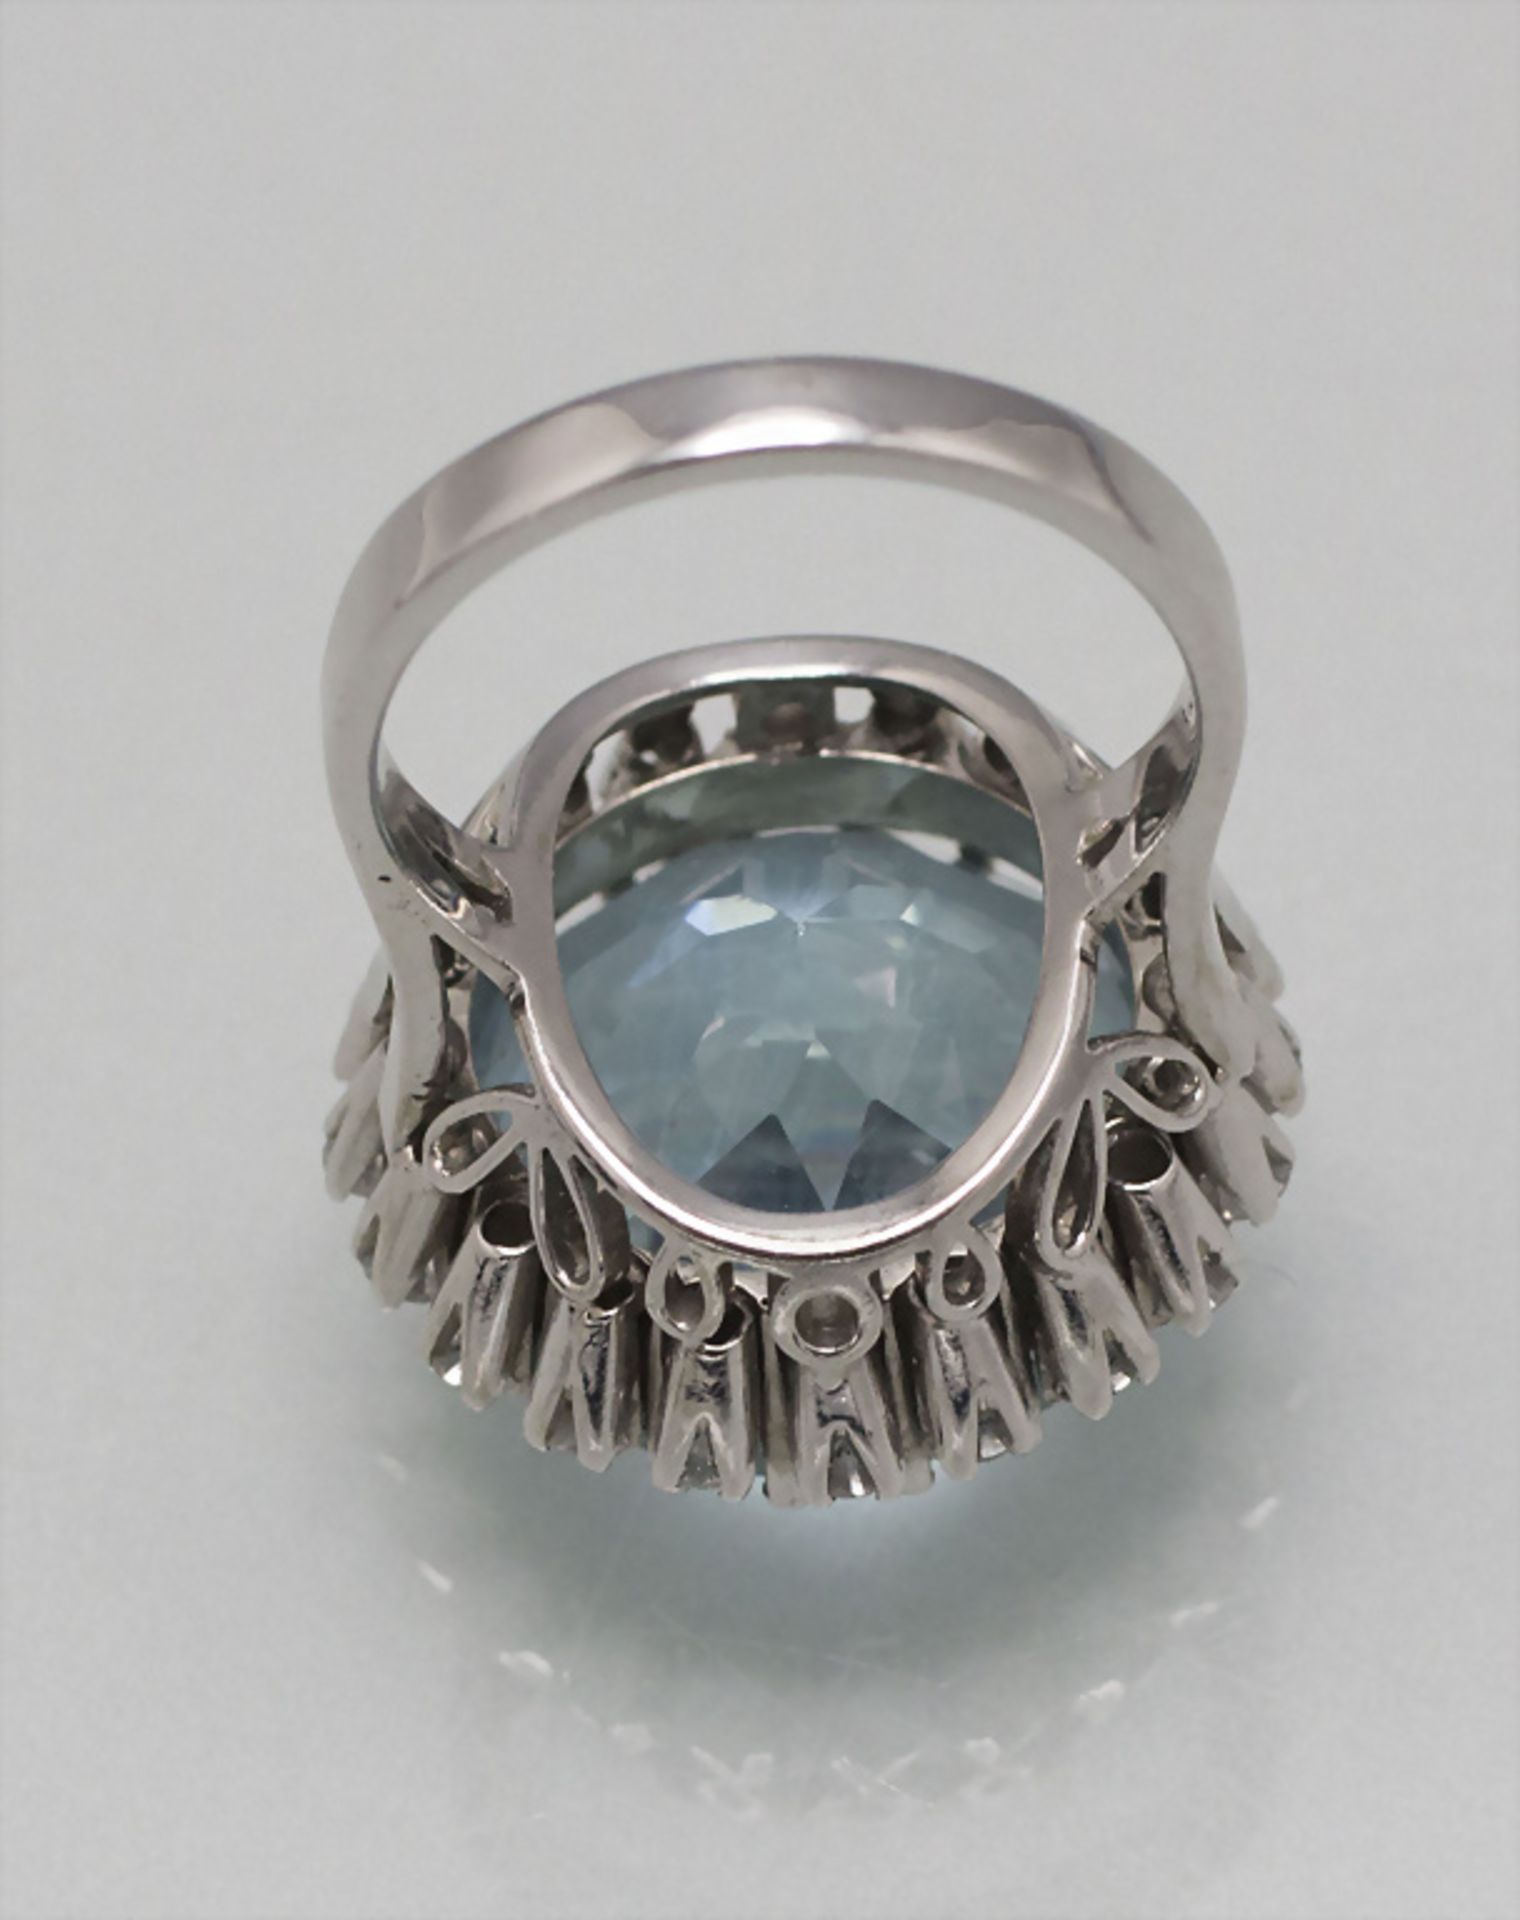 Damenring mit Aquamarin und Diamanten / A ladies 18 ct gold ring with natural aquamarine and ... - Image 3 of 4